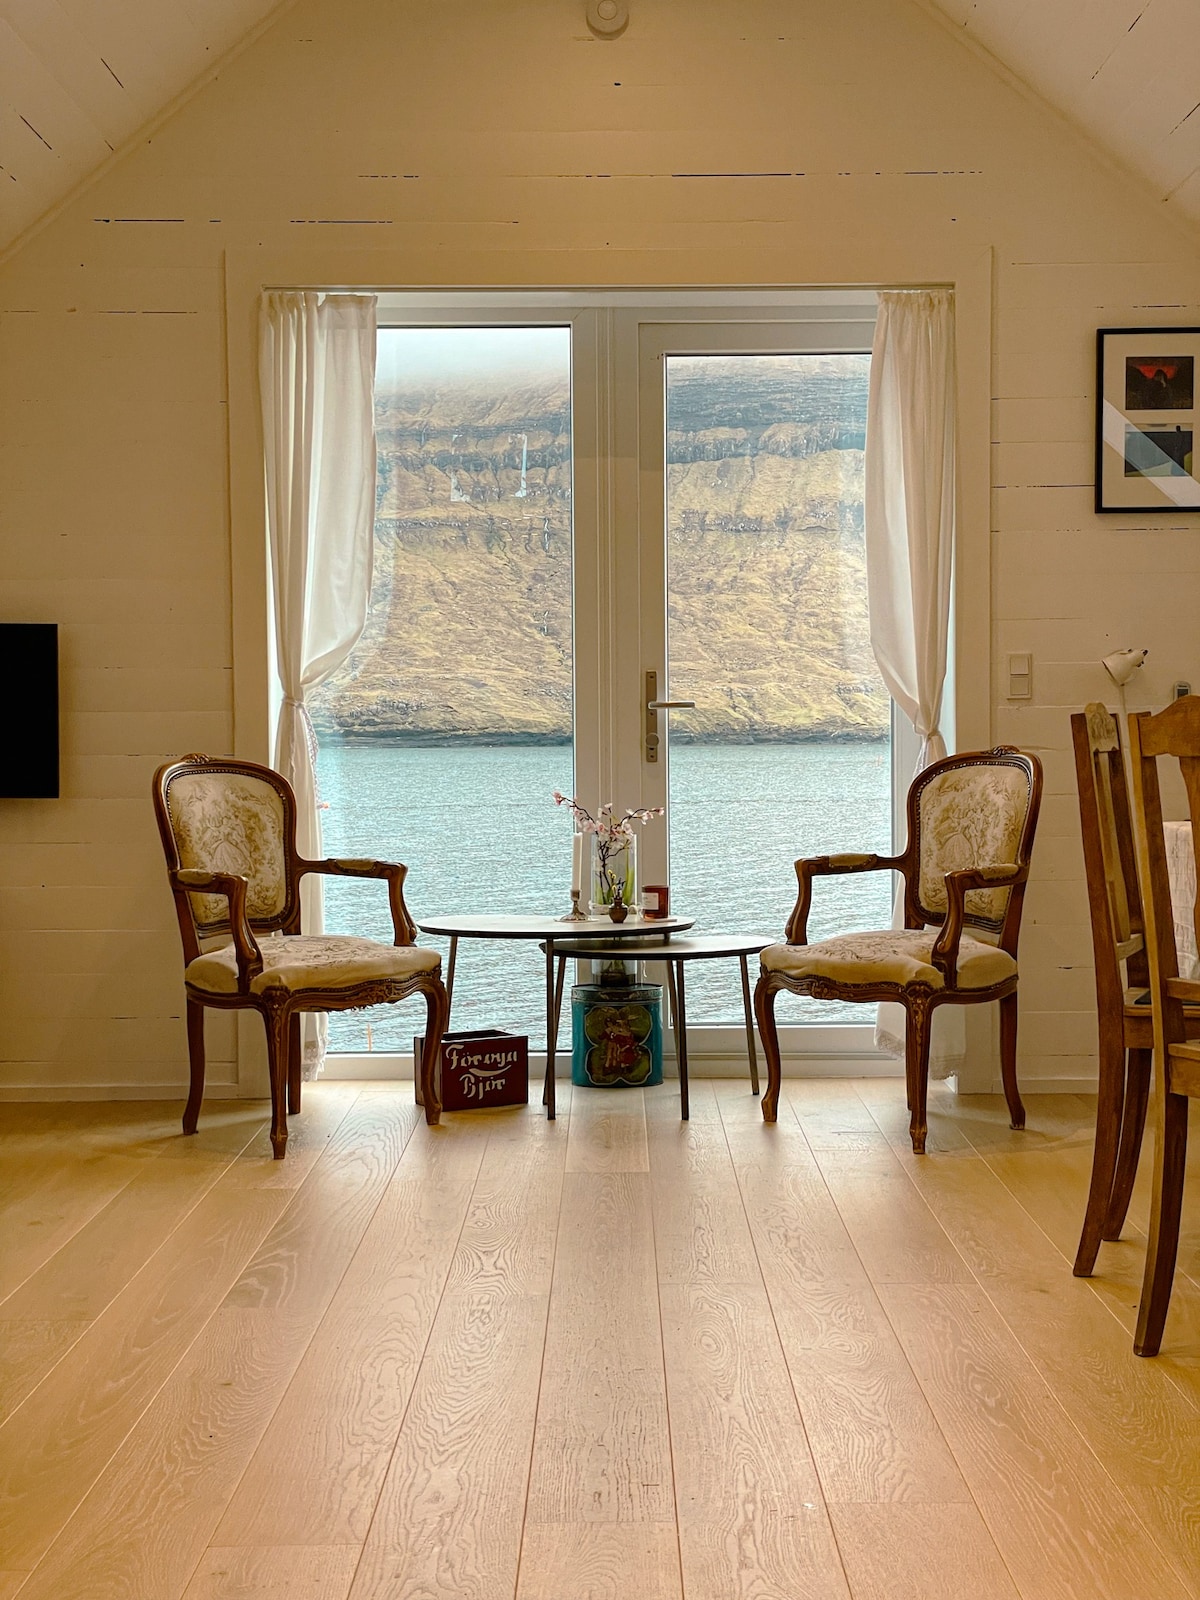 2卧室船屋，可容纳4位房客， Norðoyri